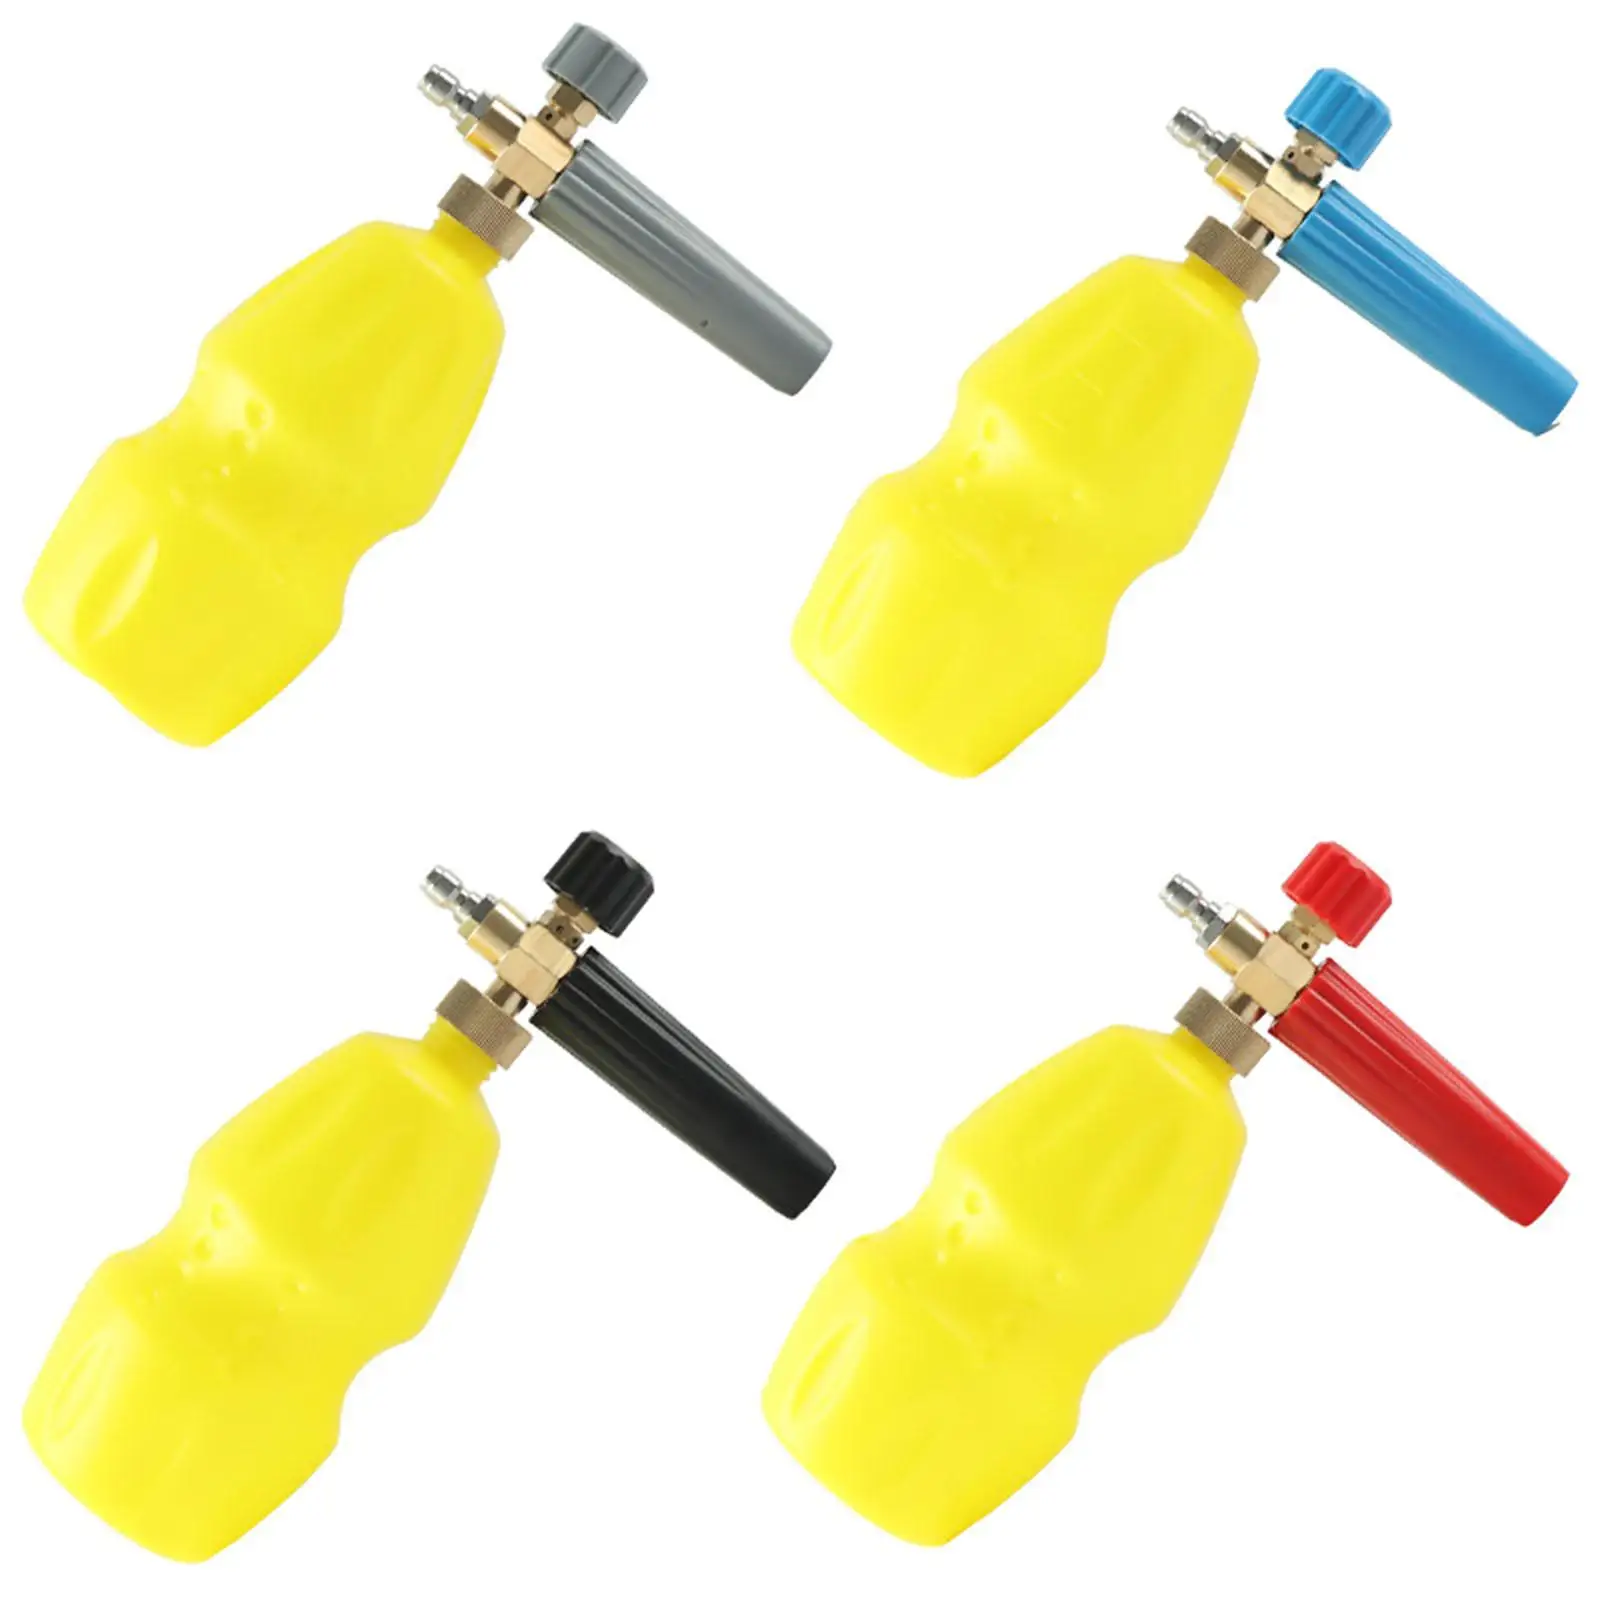 Handheld Lance Washer Bottle Soap Pump for Car Pressure Washers